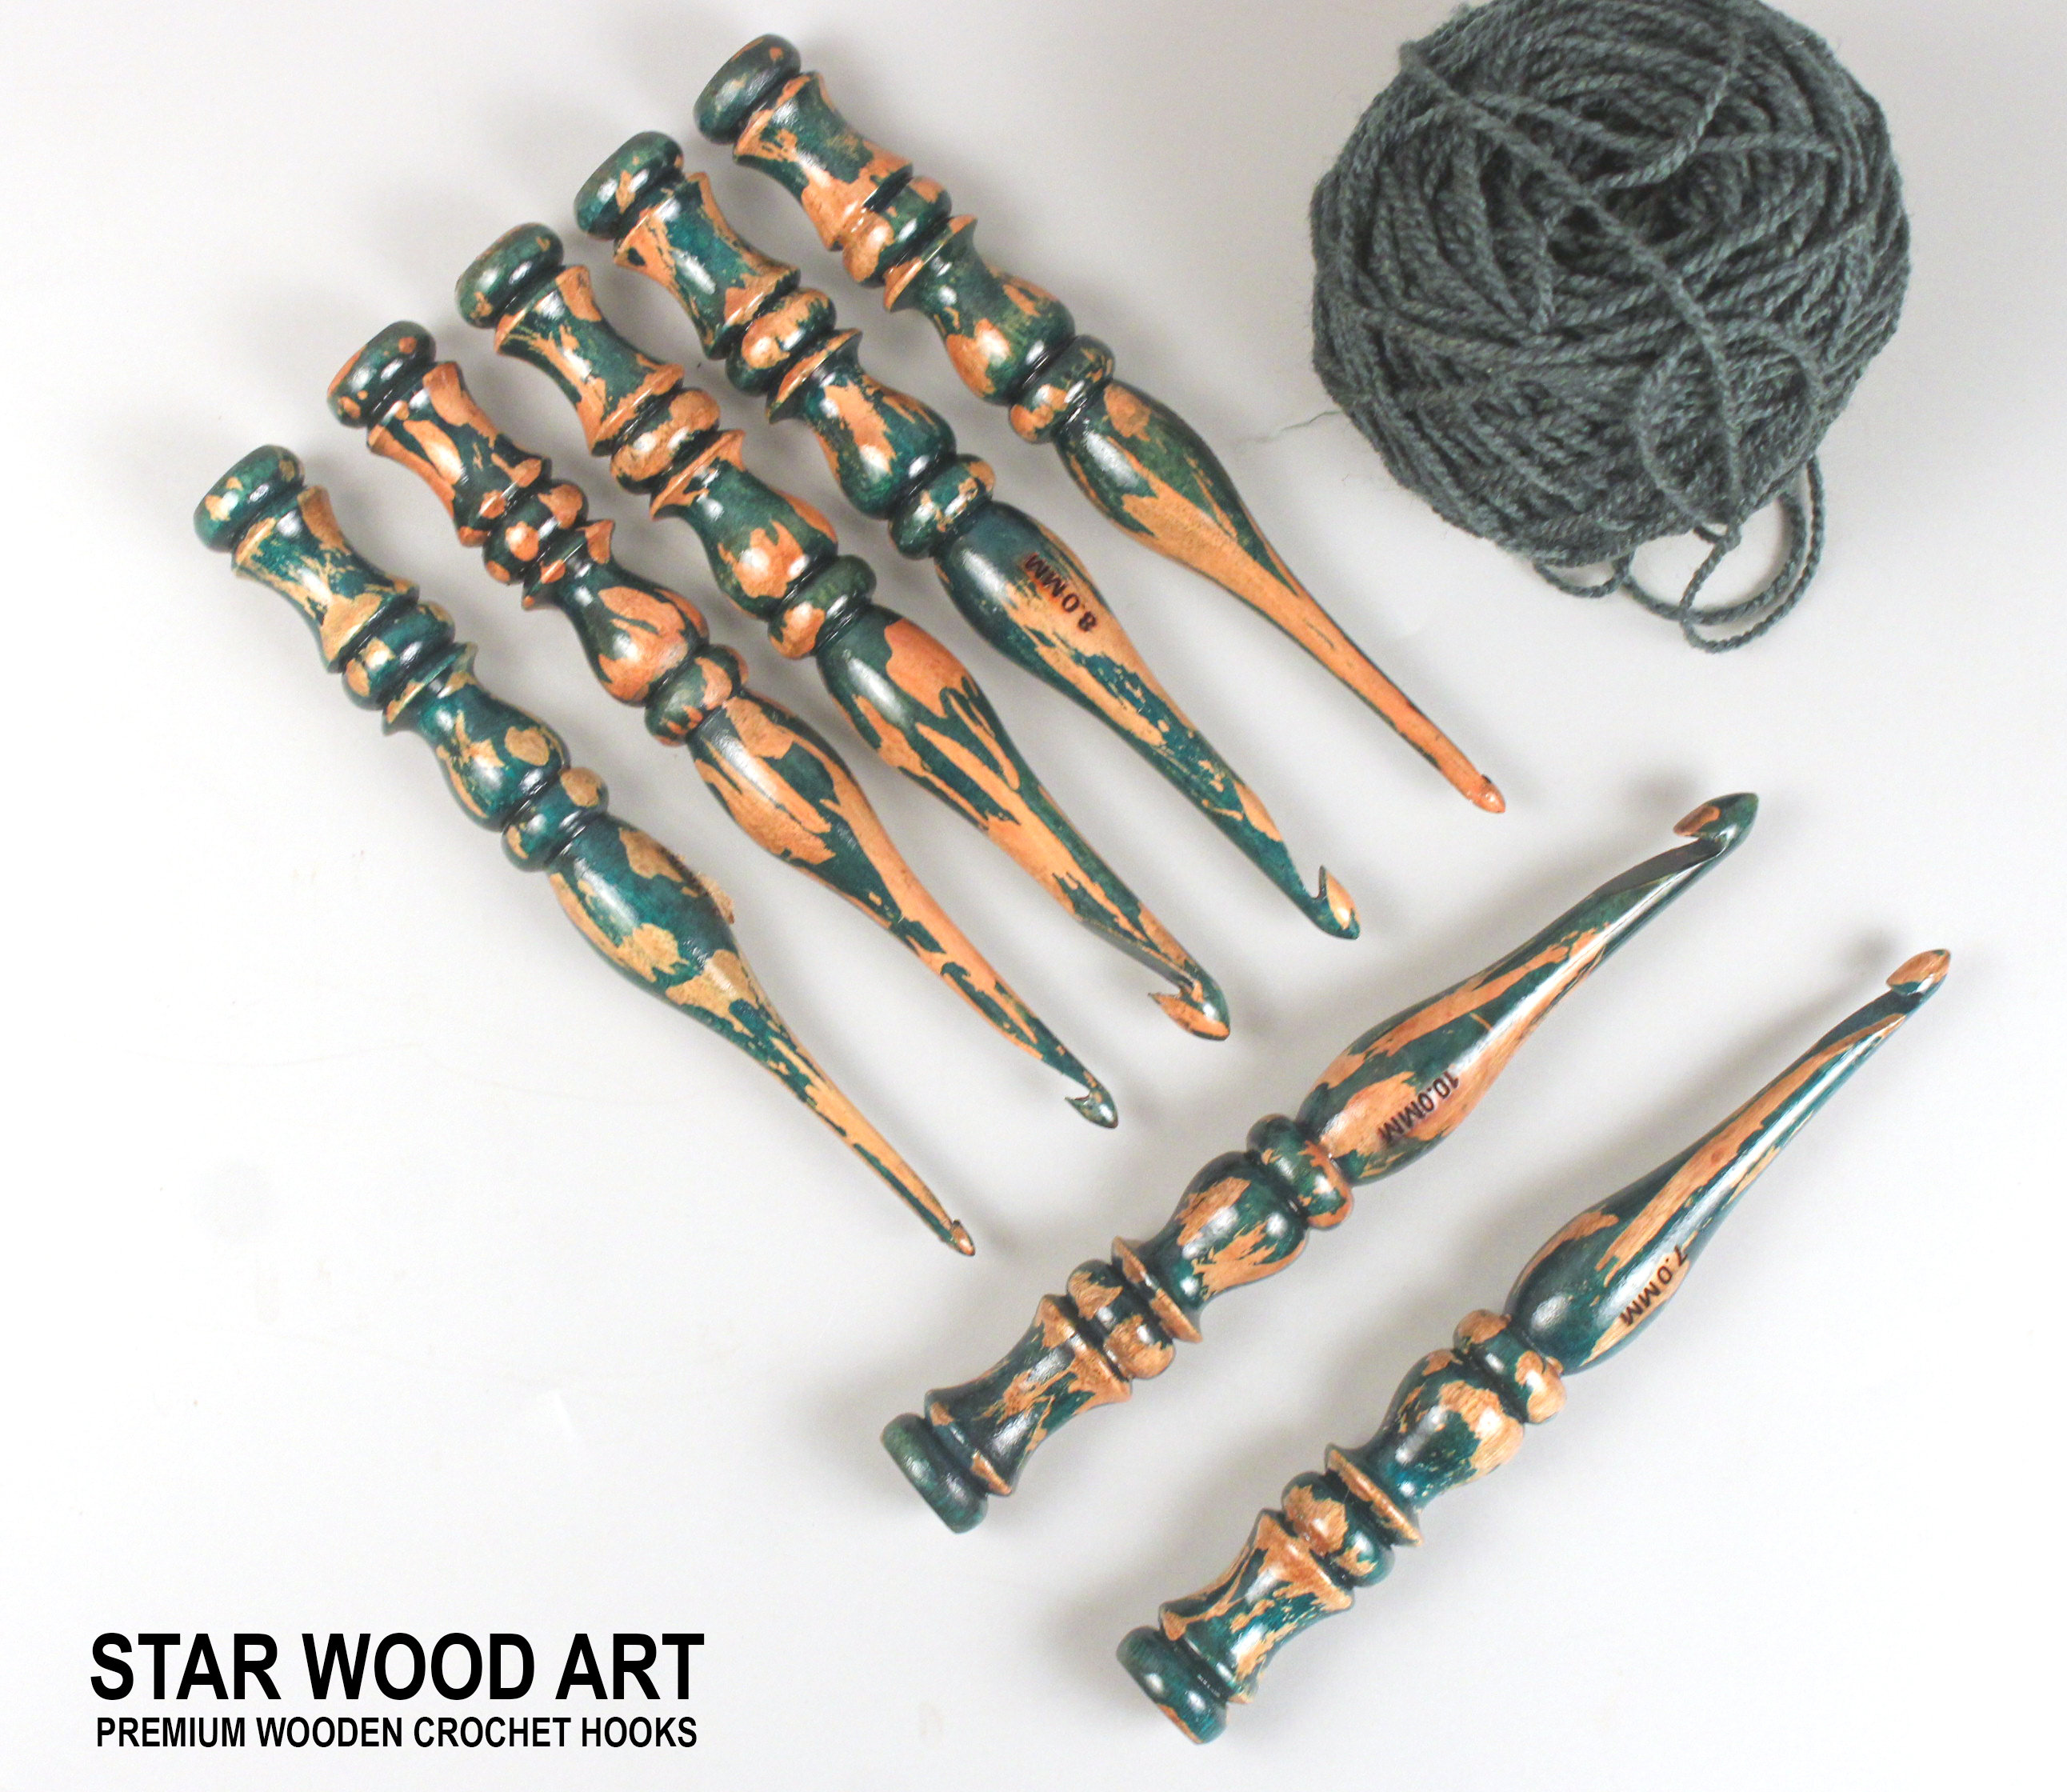 Kit de 8 aiguilles à crochet avec poignée douce et ergonomique 8 tailles de  crochet – Outil de tricot et de crochet pour débutants, bricolage manuel